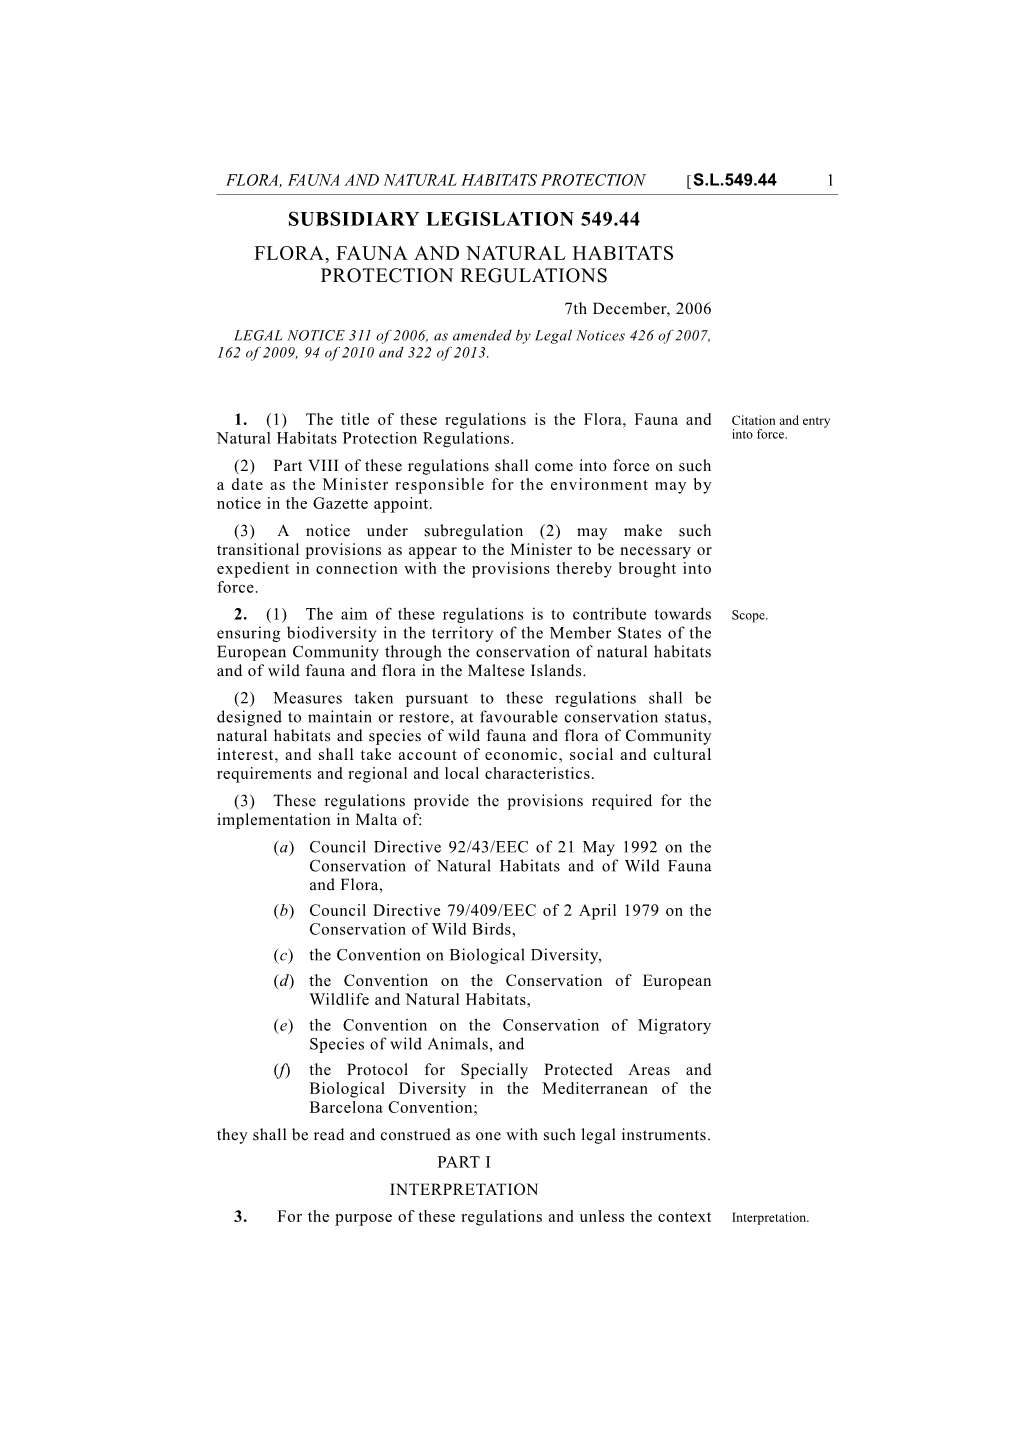 Flora, Fauna and Natural Habitats Protection Regulations, 2006